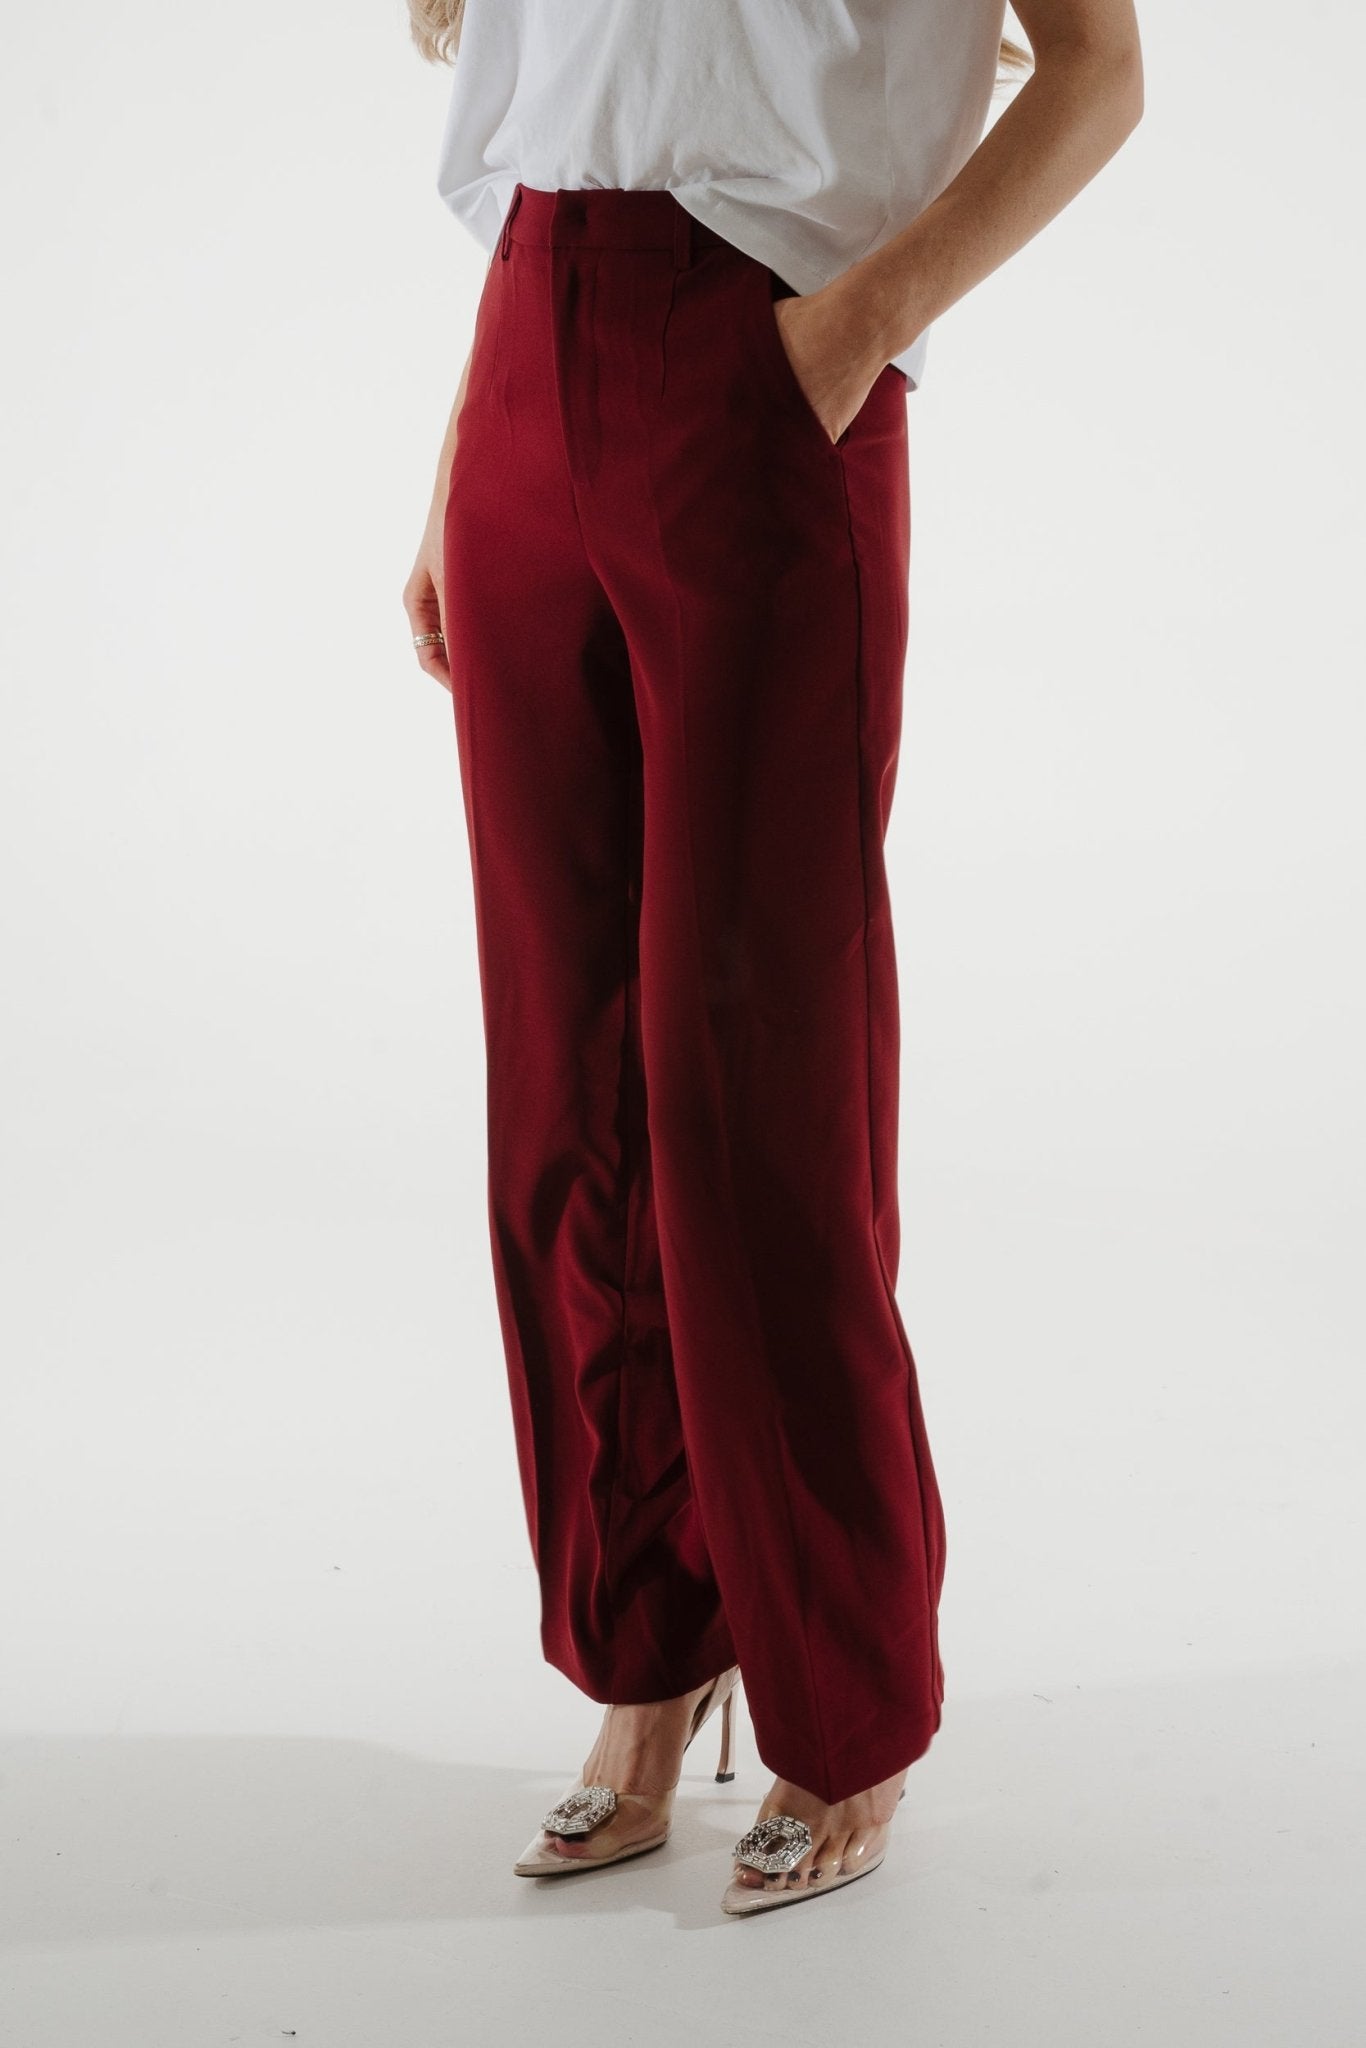 Freya Pleat Front Wide Leg Trouser In Wine - The Walk in Wardrobe